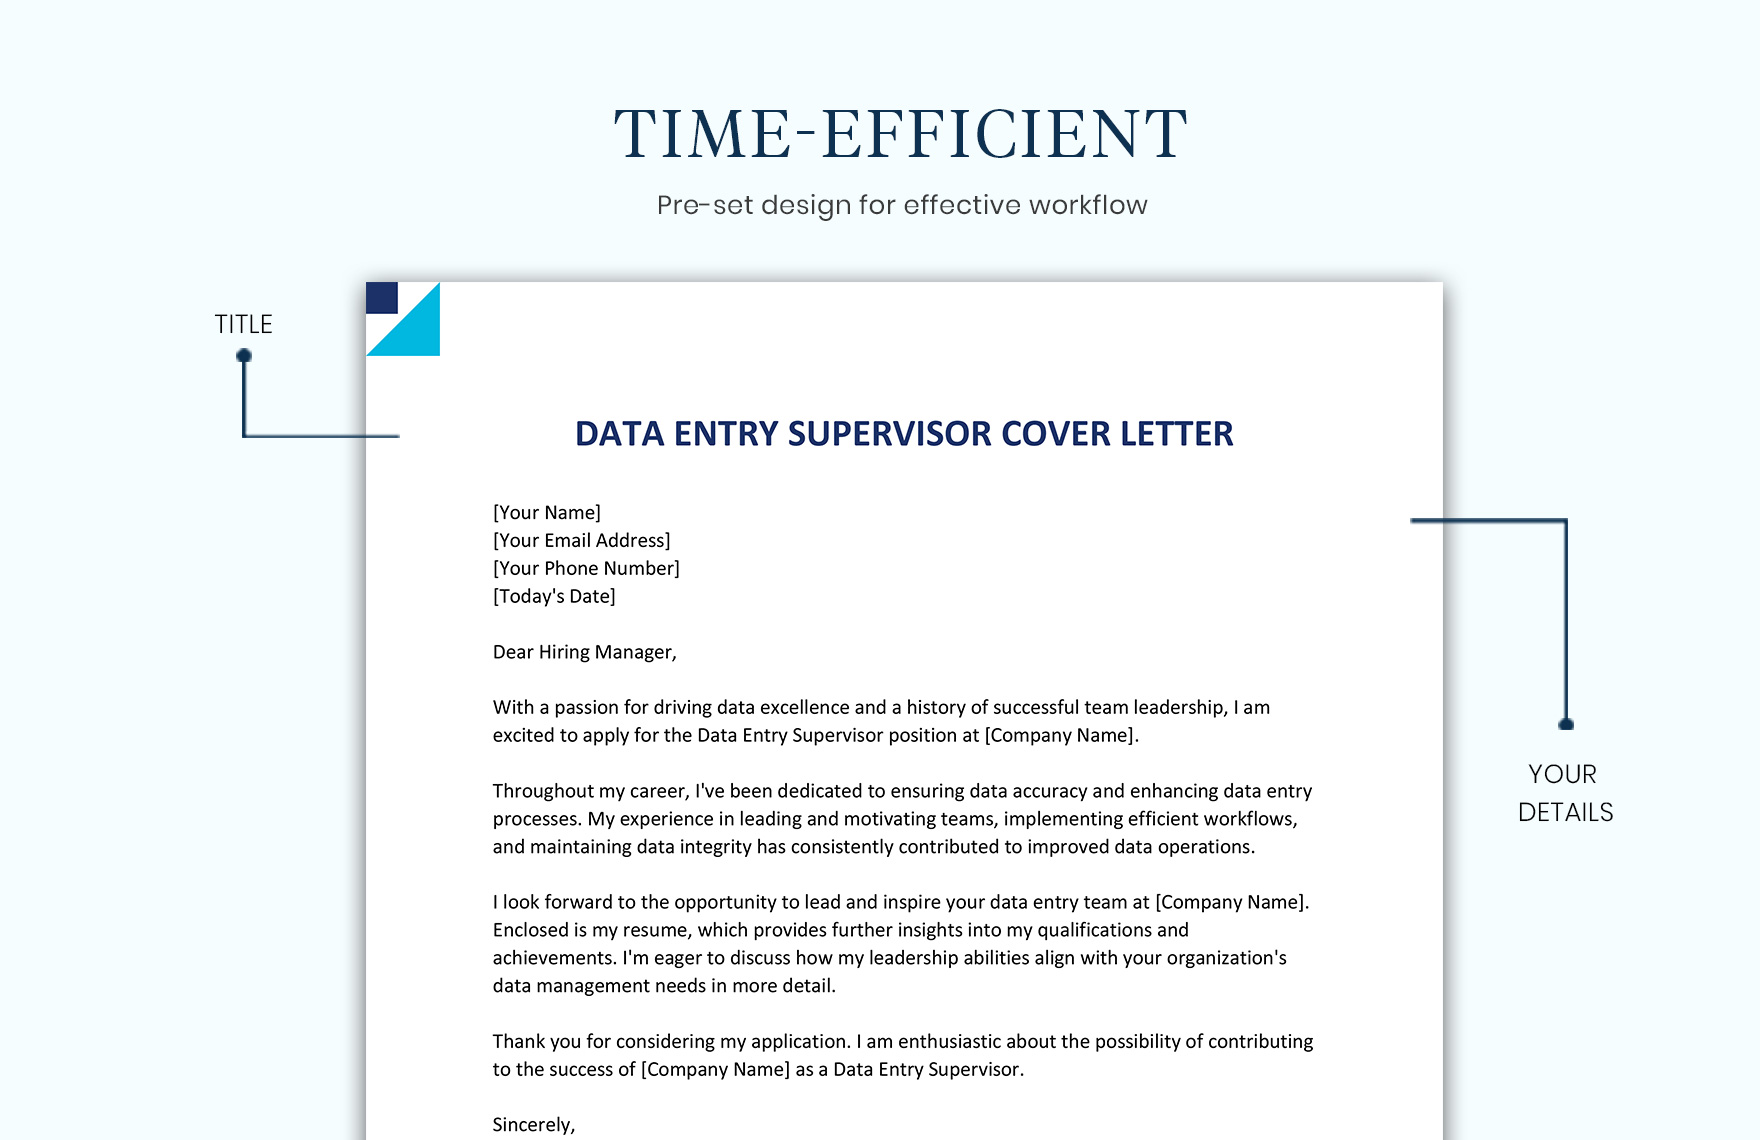 Data Entry Supervisor Cover Letter